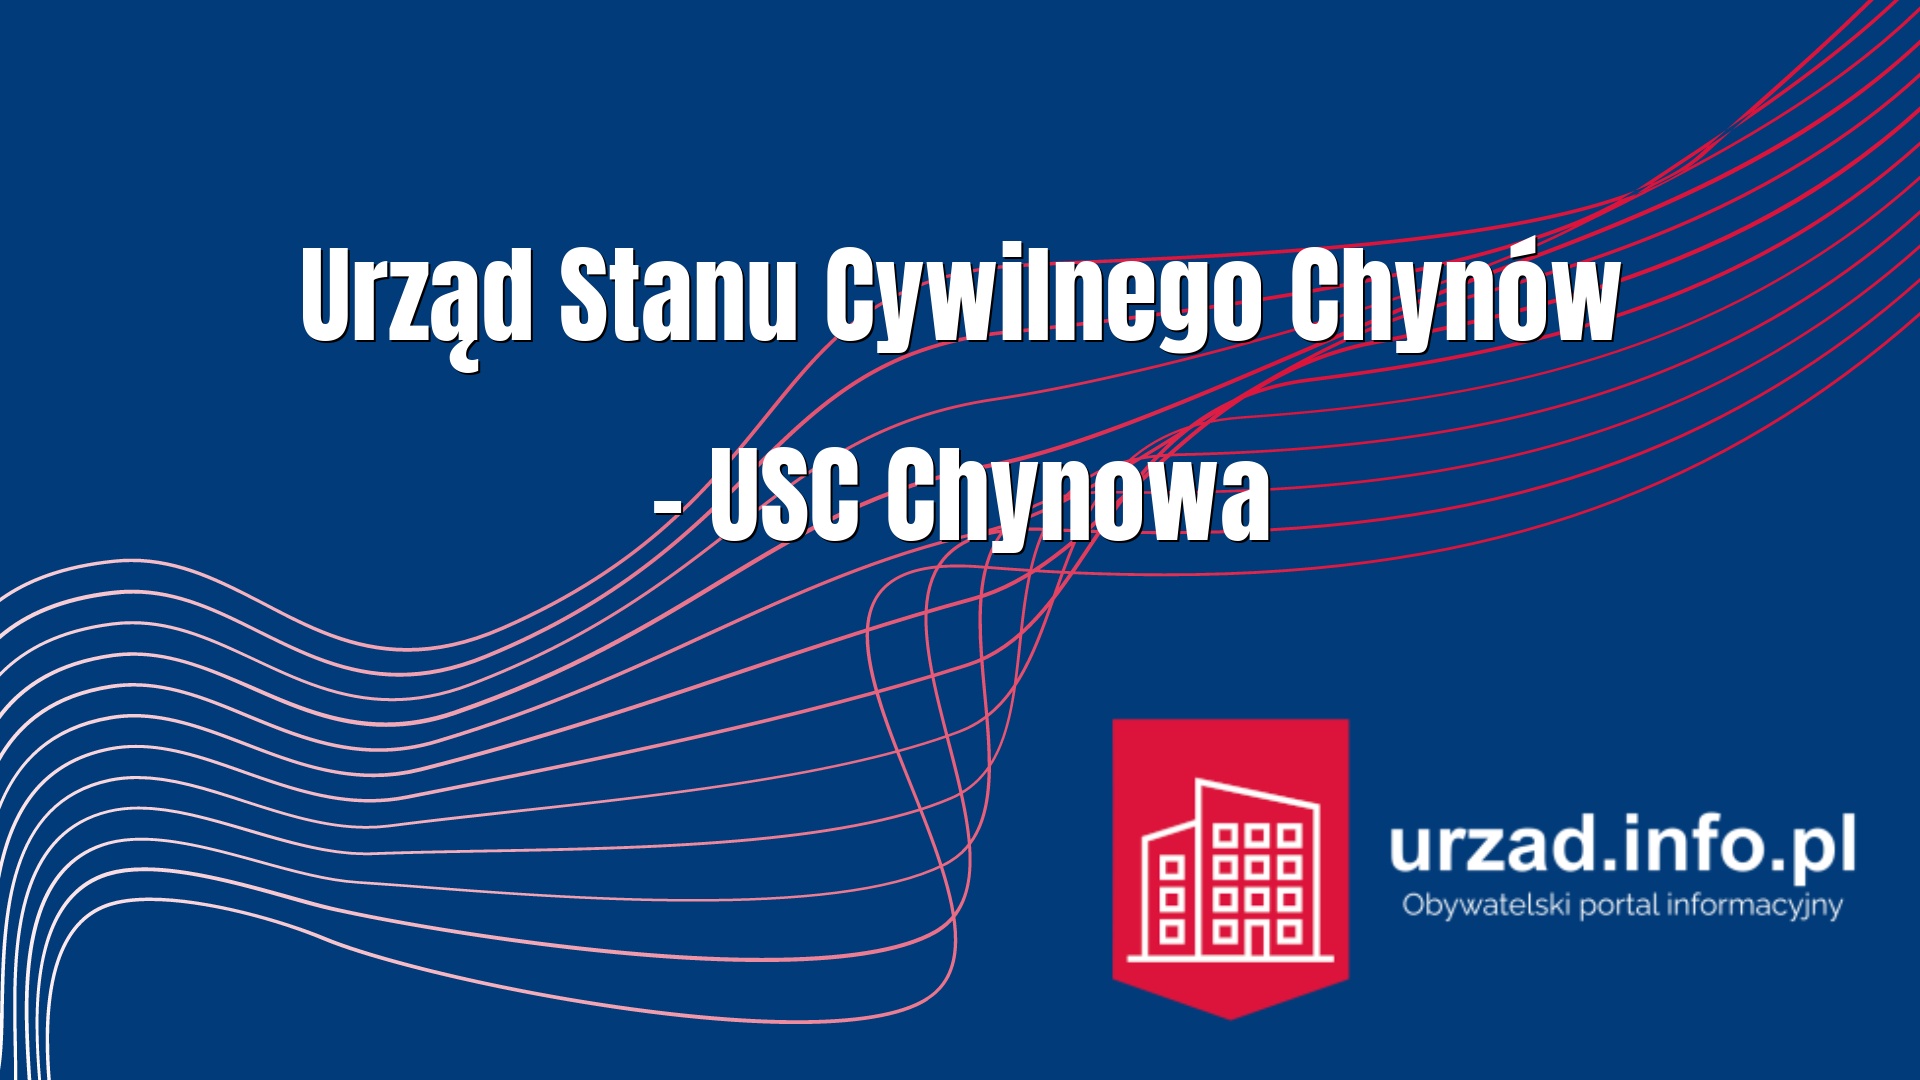 Urząd Stanu Cywilnego Chynów – USC Chynowa